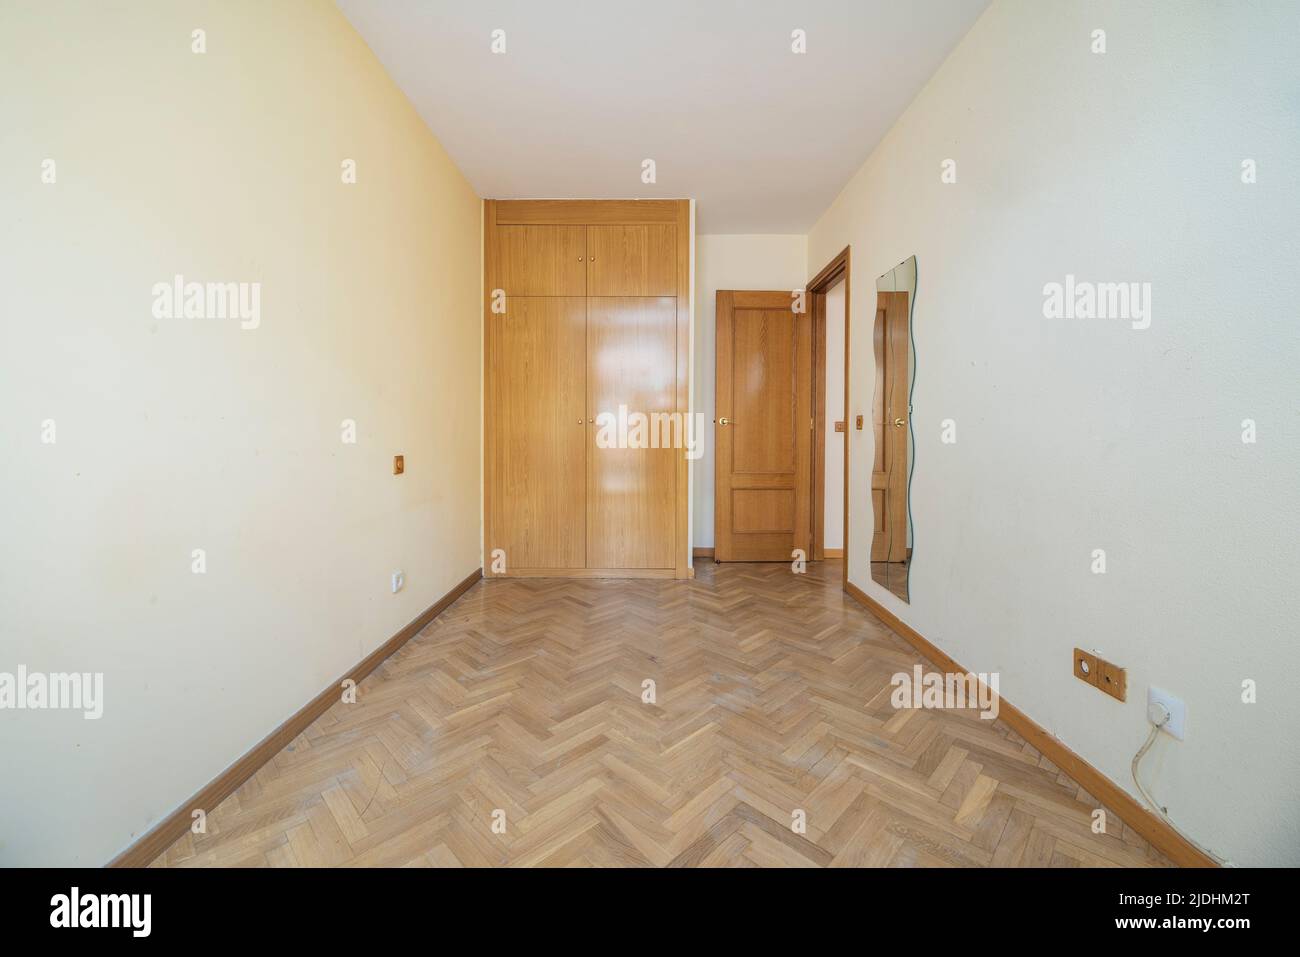 Empty room with herringbone oak parquet flooring, light yellow painted walls and matching oak wood door with two door built-in wardrobe Stock Photo